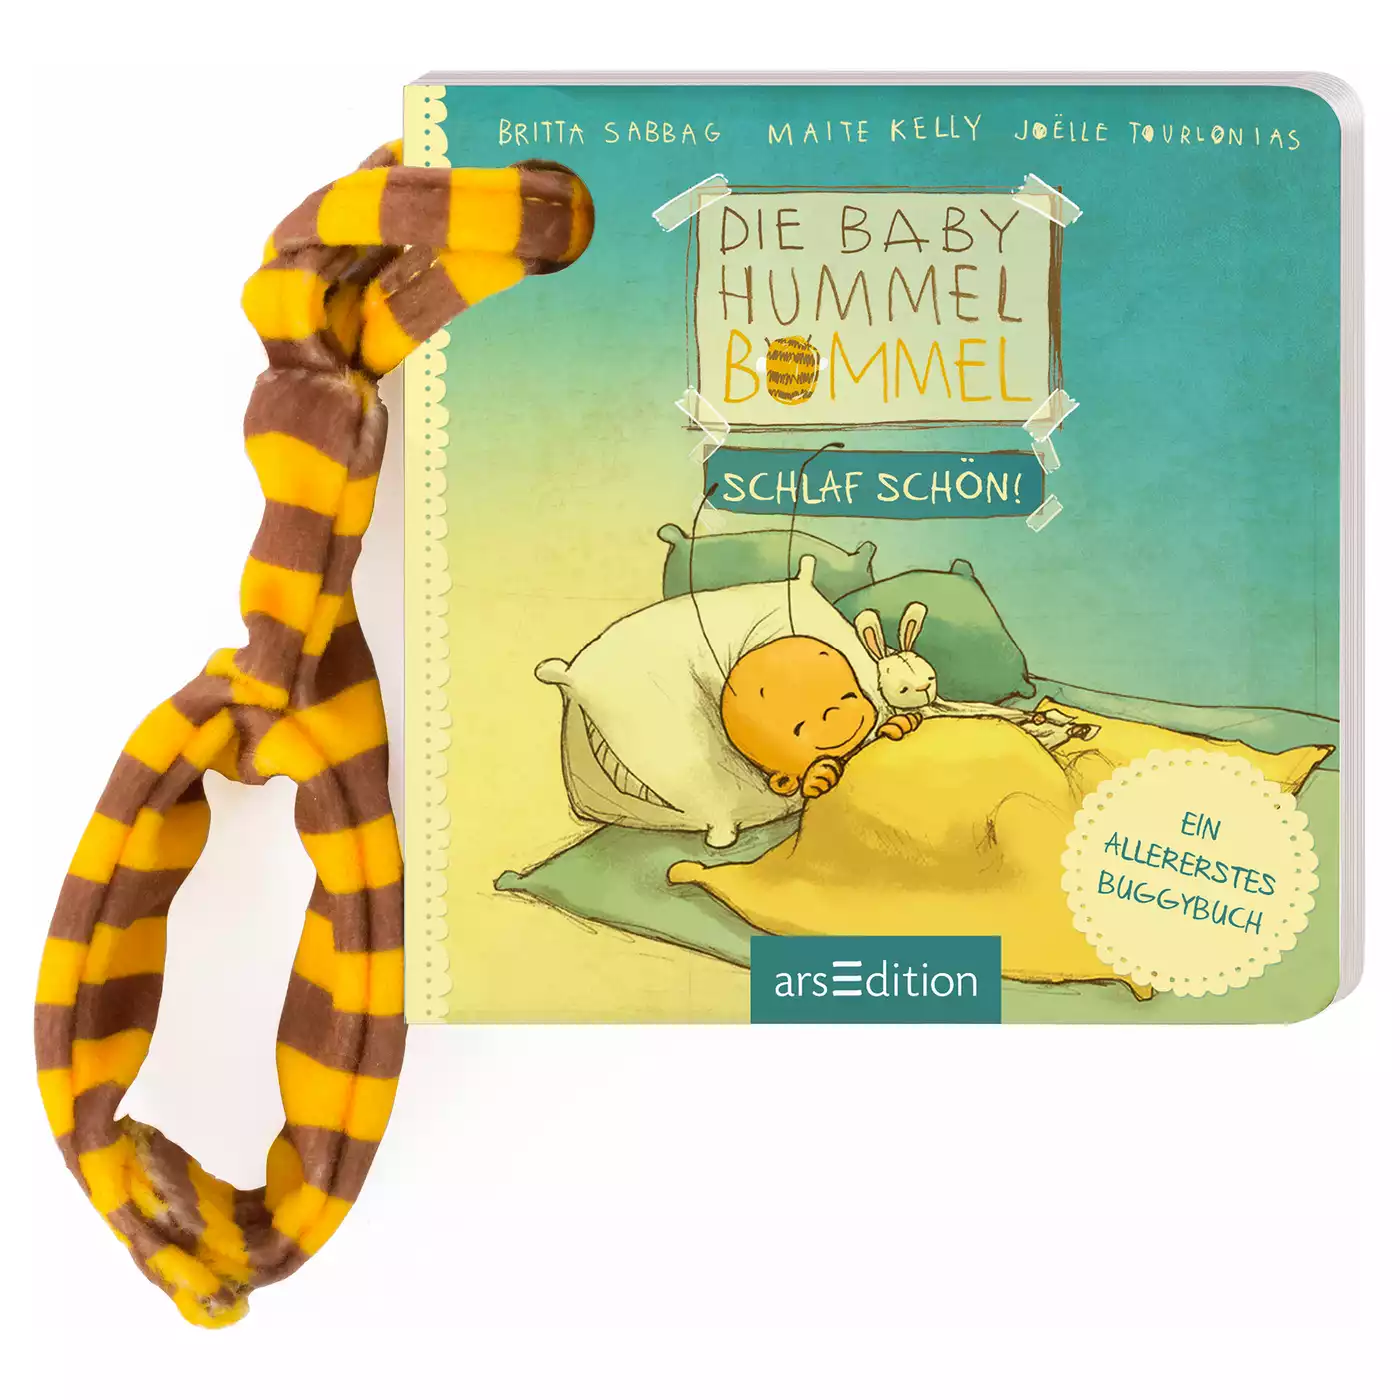 Die Baby Hummel Bommel arsEdition 2000574913711 1